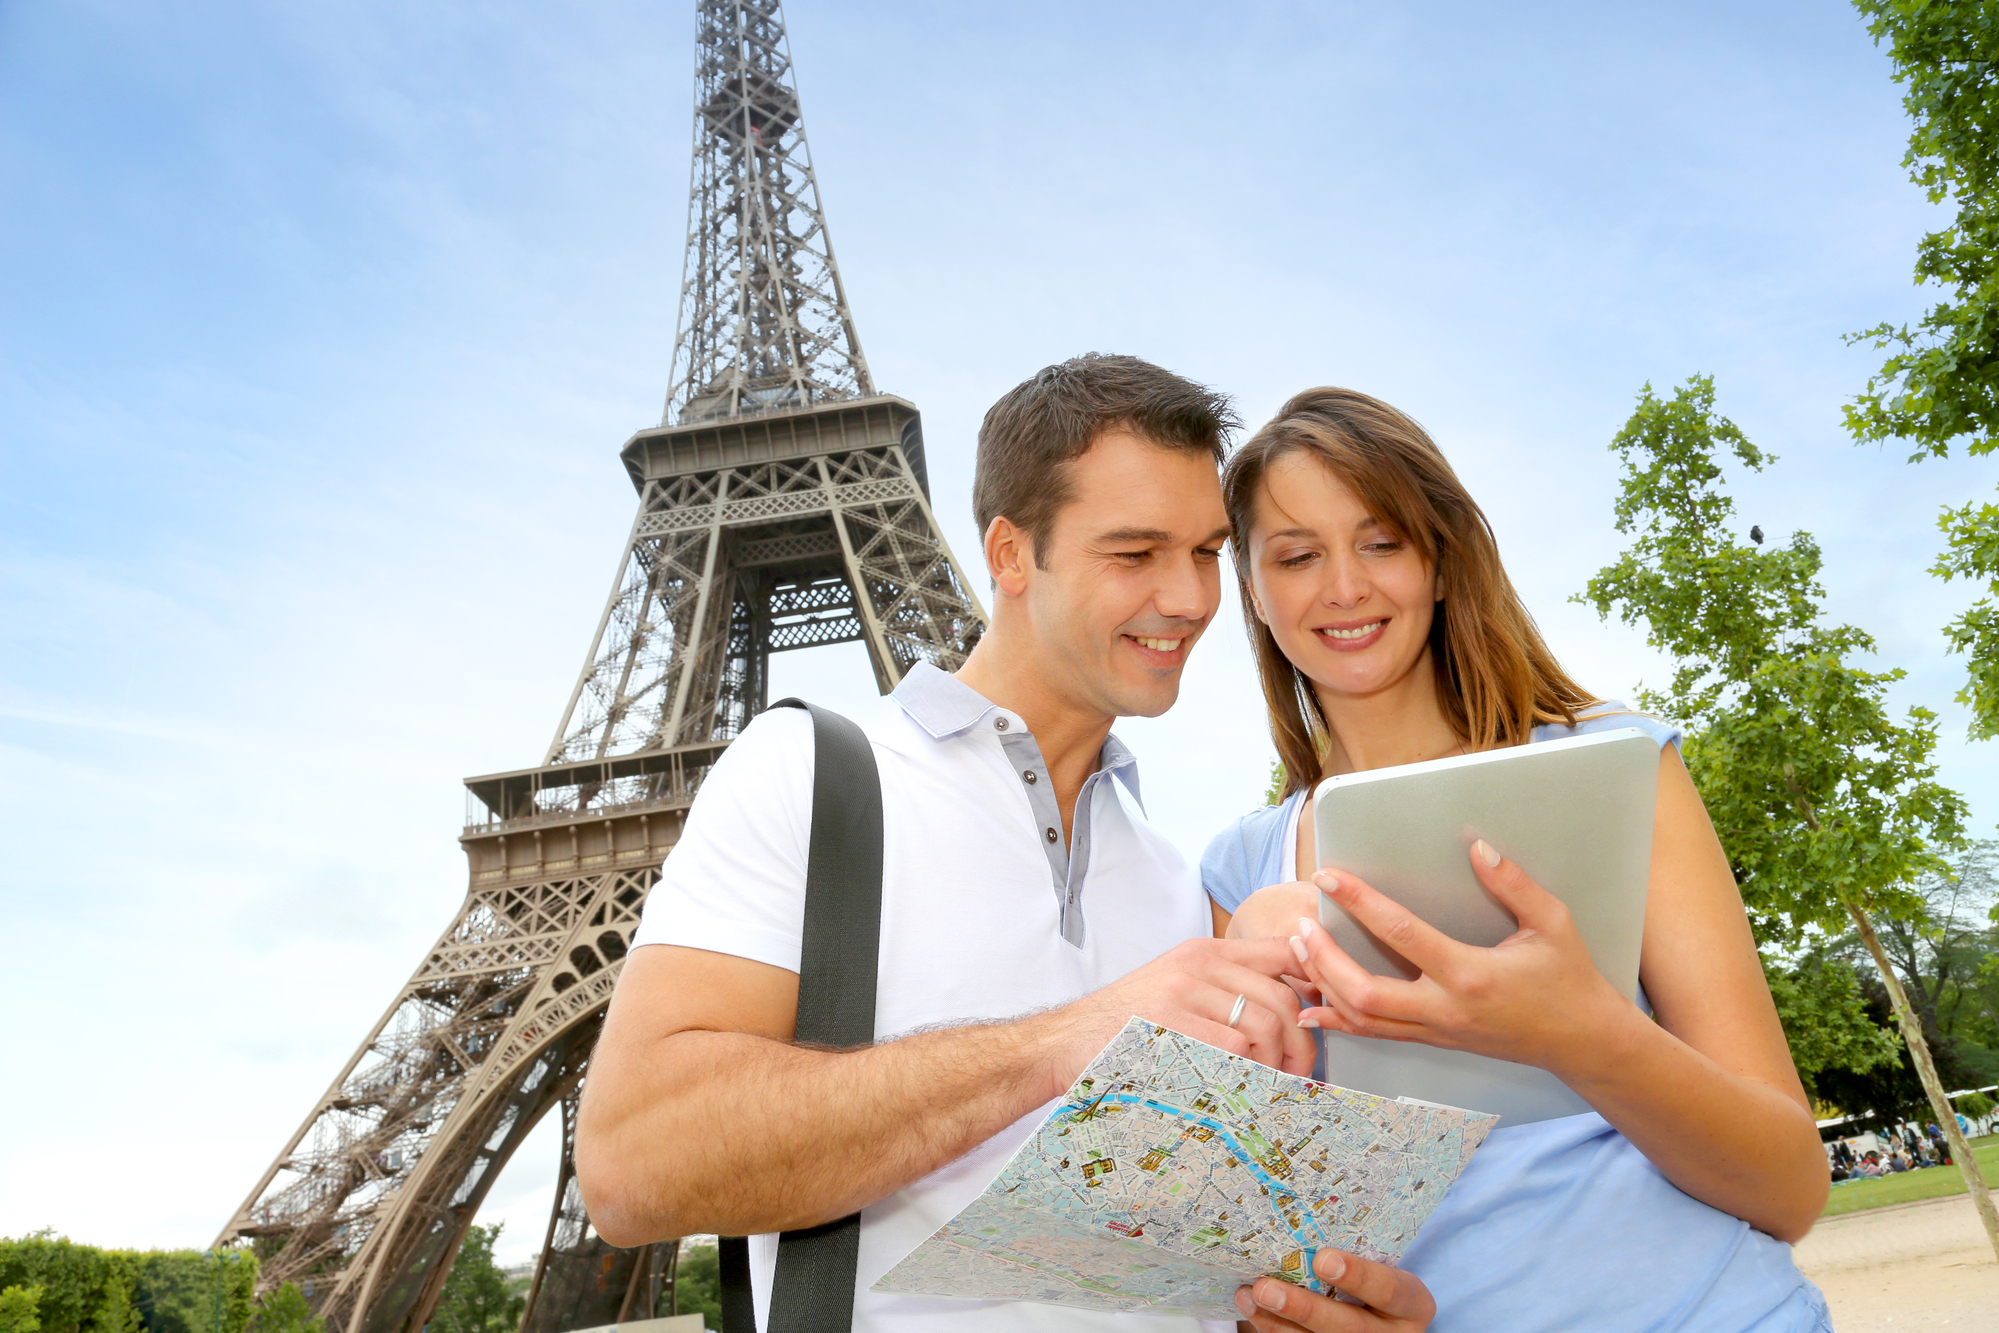 Fréquentation touristique : Paris devance ses rivales européennes (©DepositPhotos)